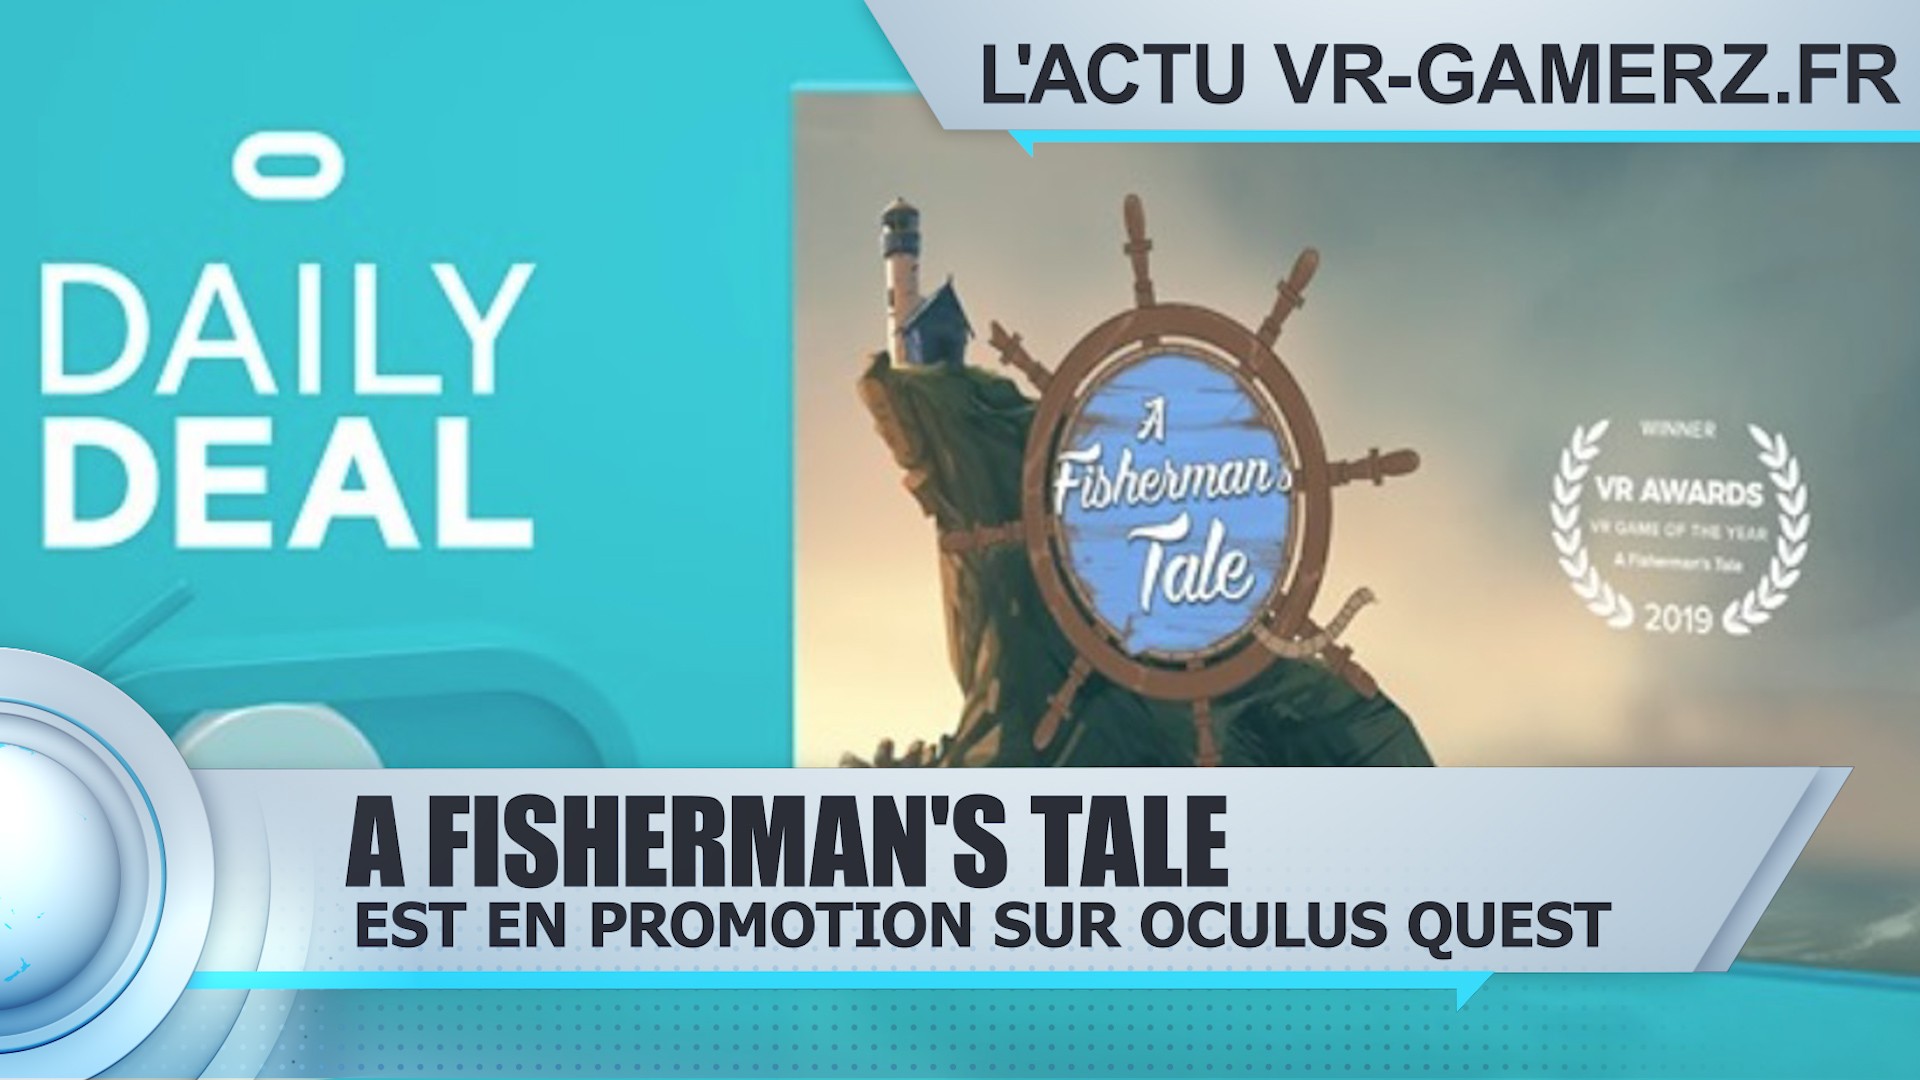 A Fisherman’s Tale sur Oculus quest est en promotion